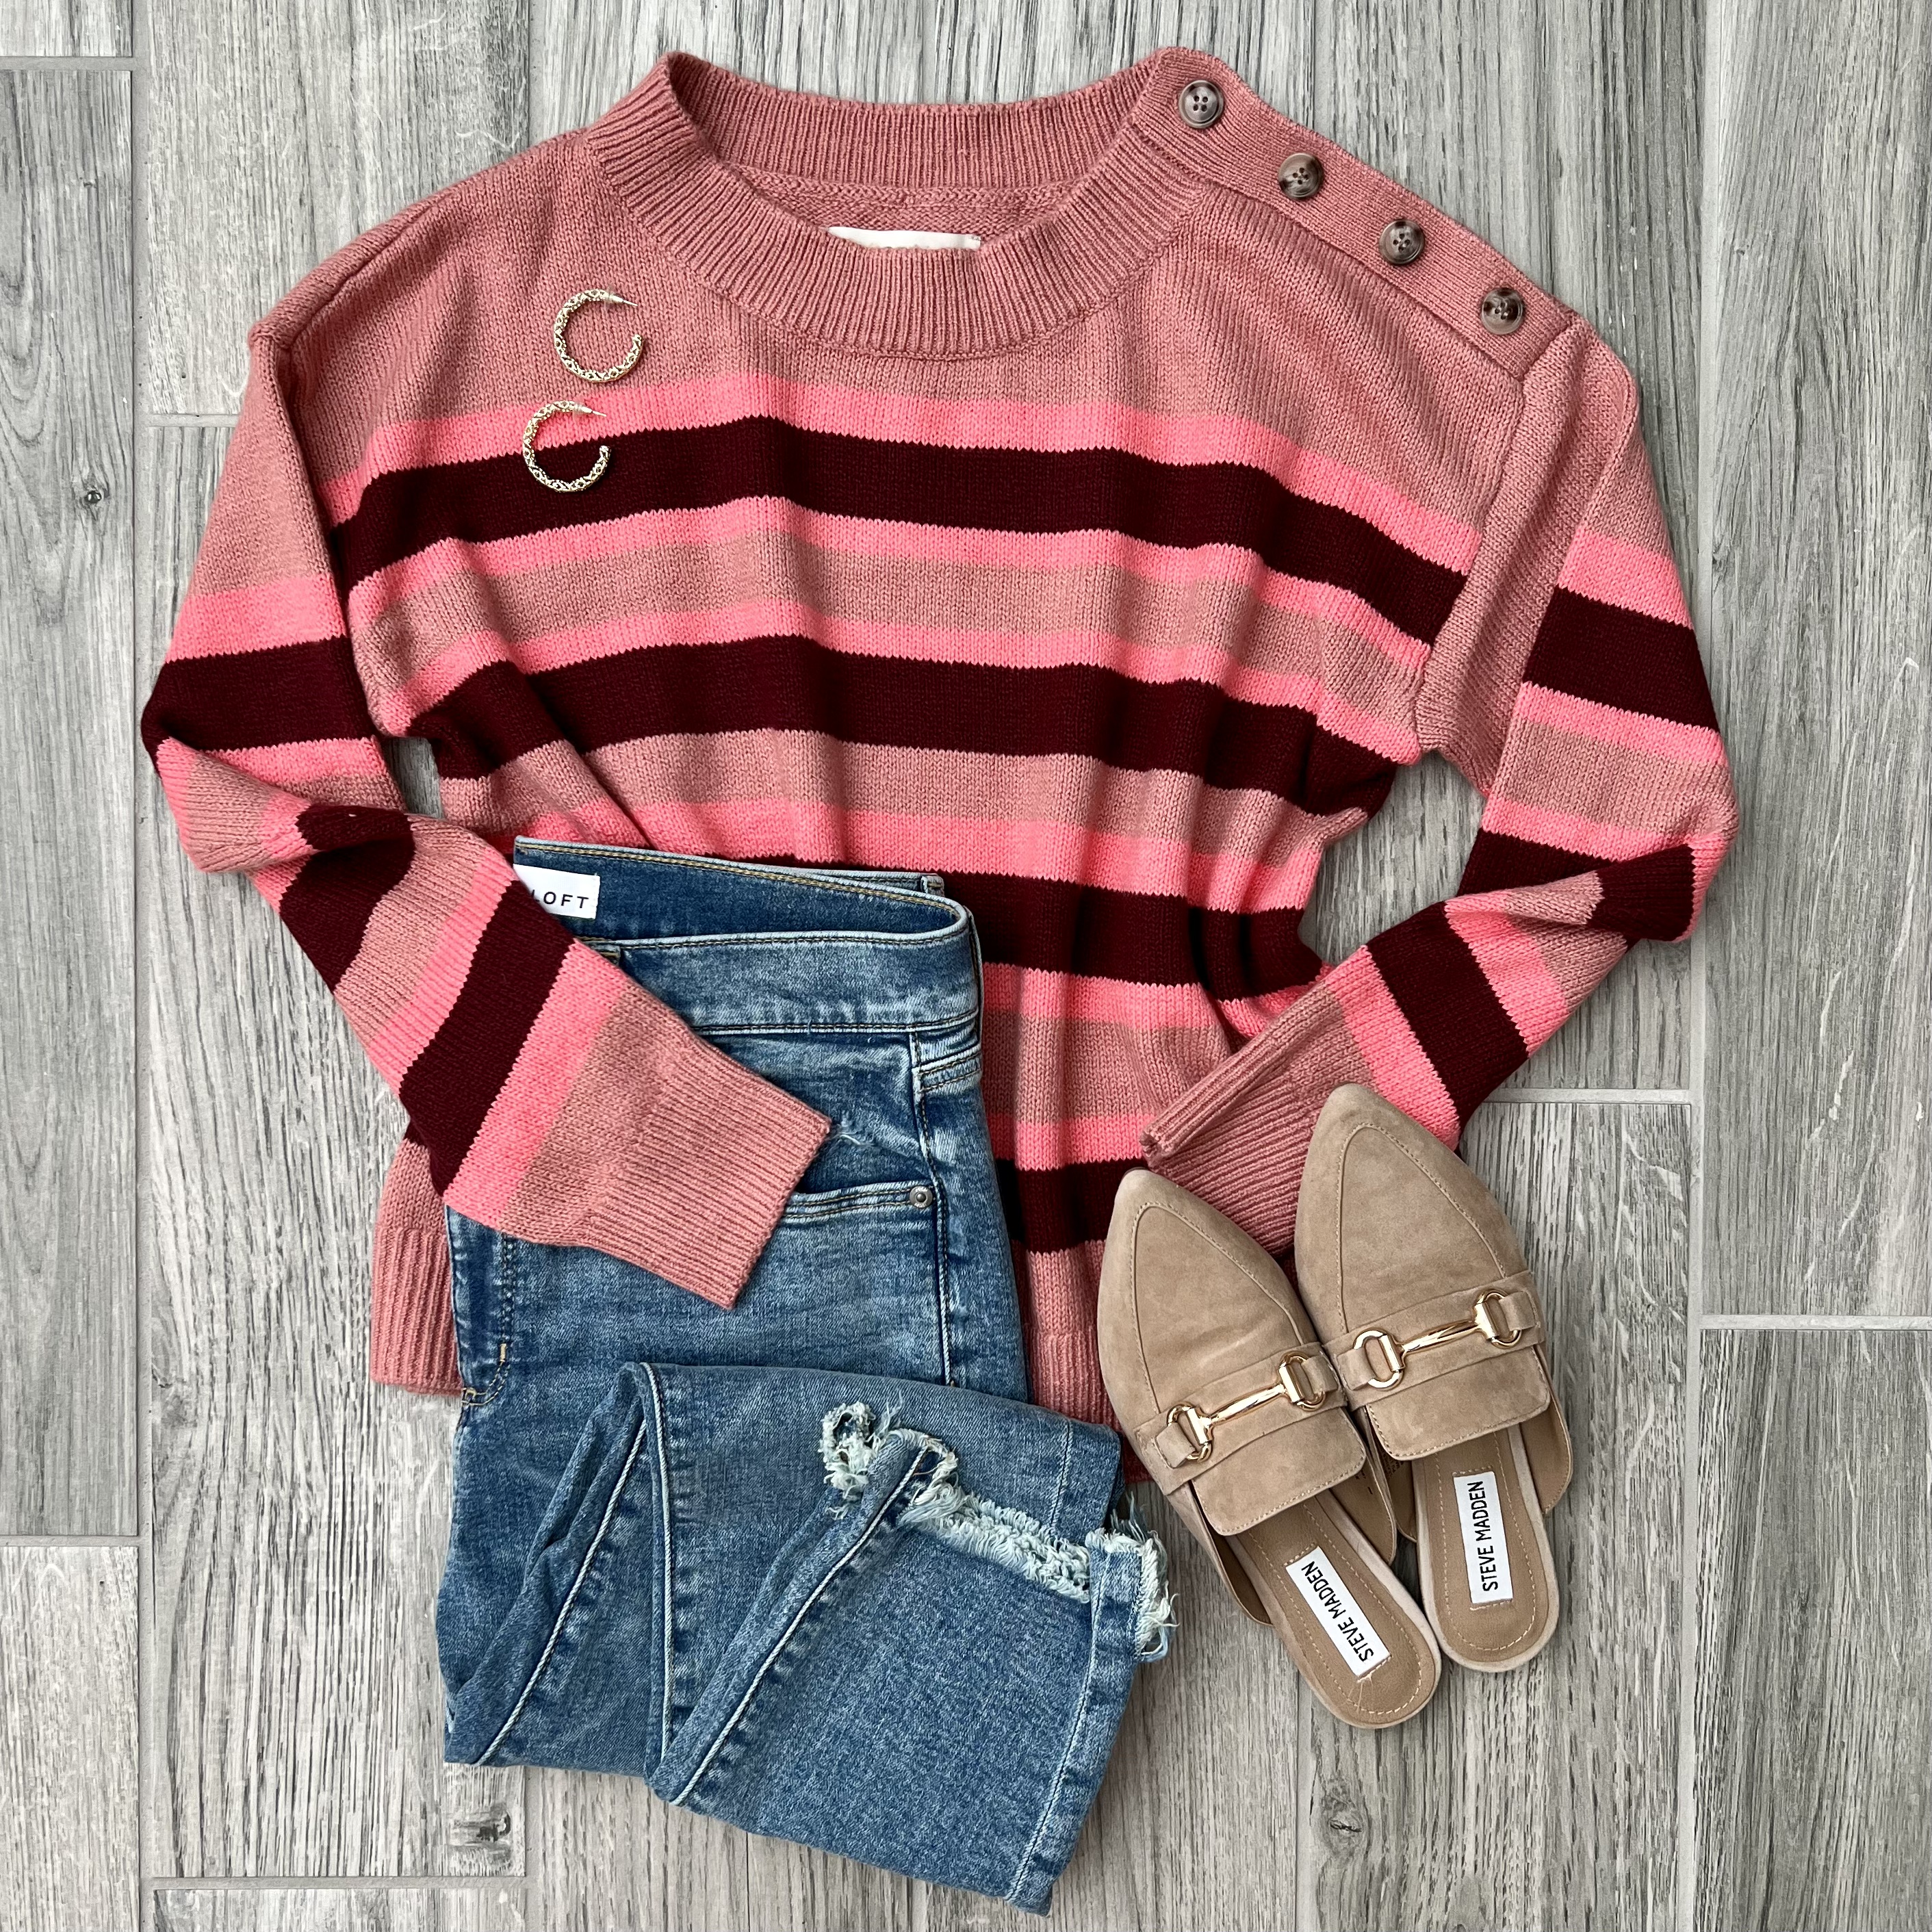 LOFT striped sweater, LOFT jeans